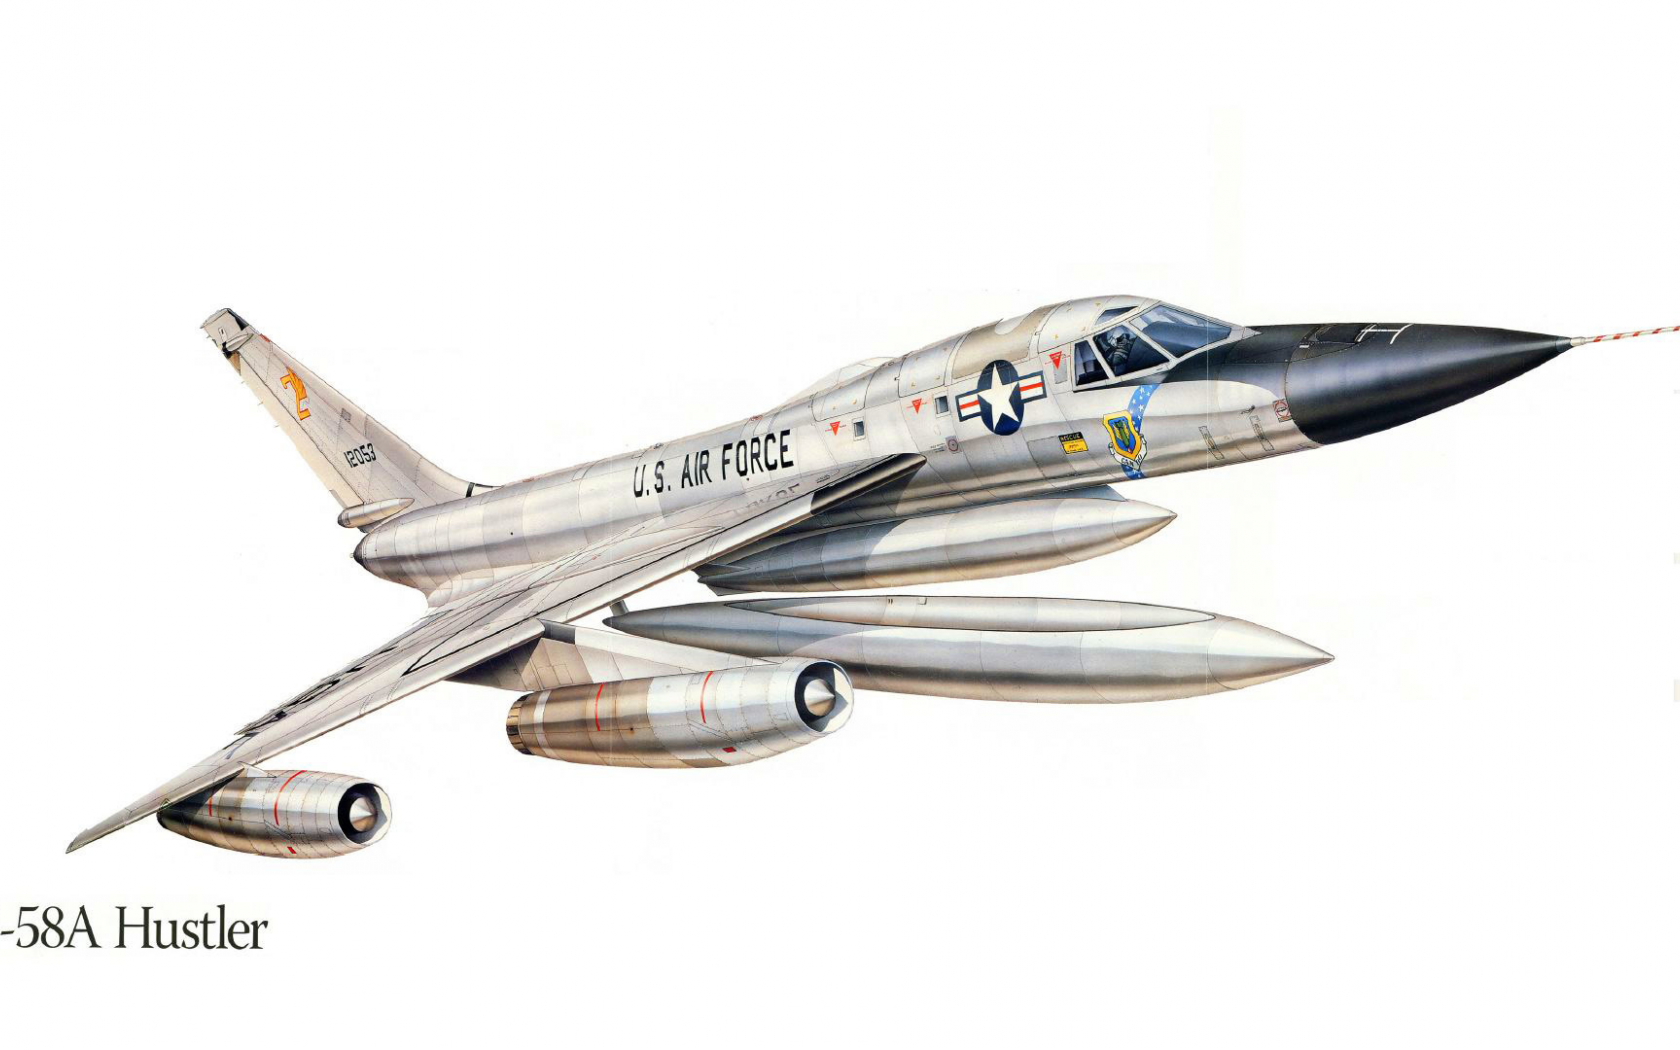 рисунок, сша, бомбардировщик, б-58, самолет